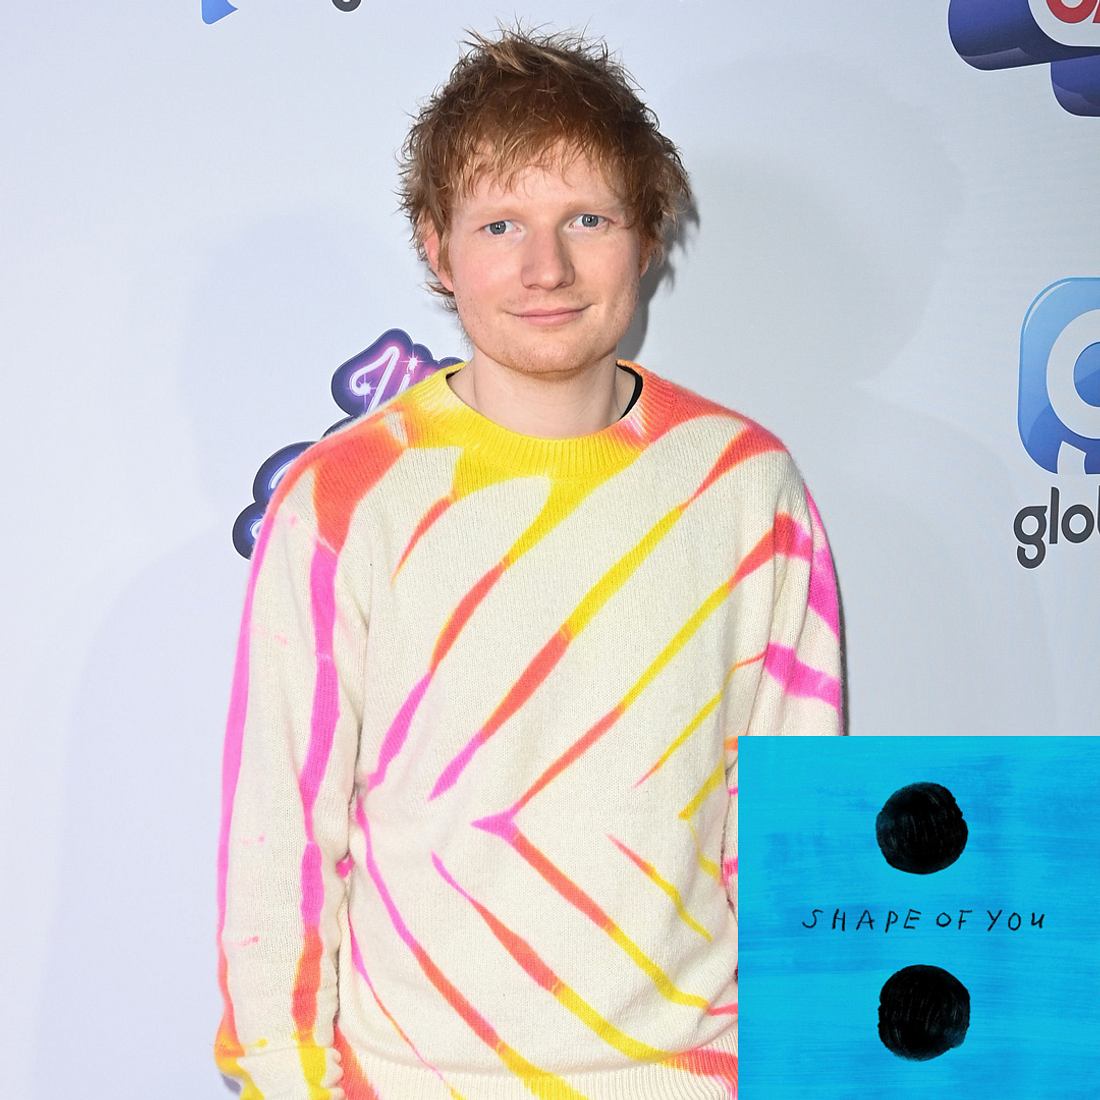 Stars, die ihre Songs hassen: Ed Sheeran – Shape of You